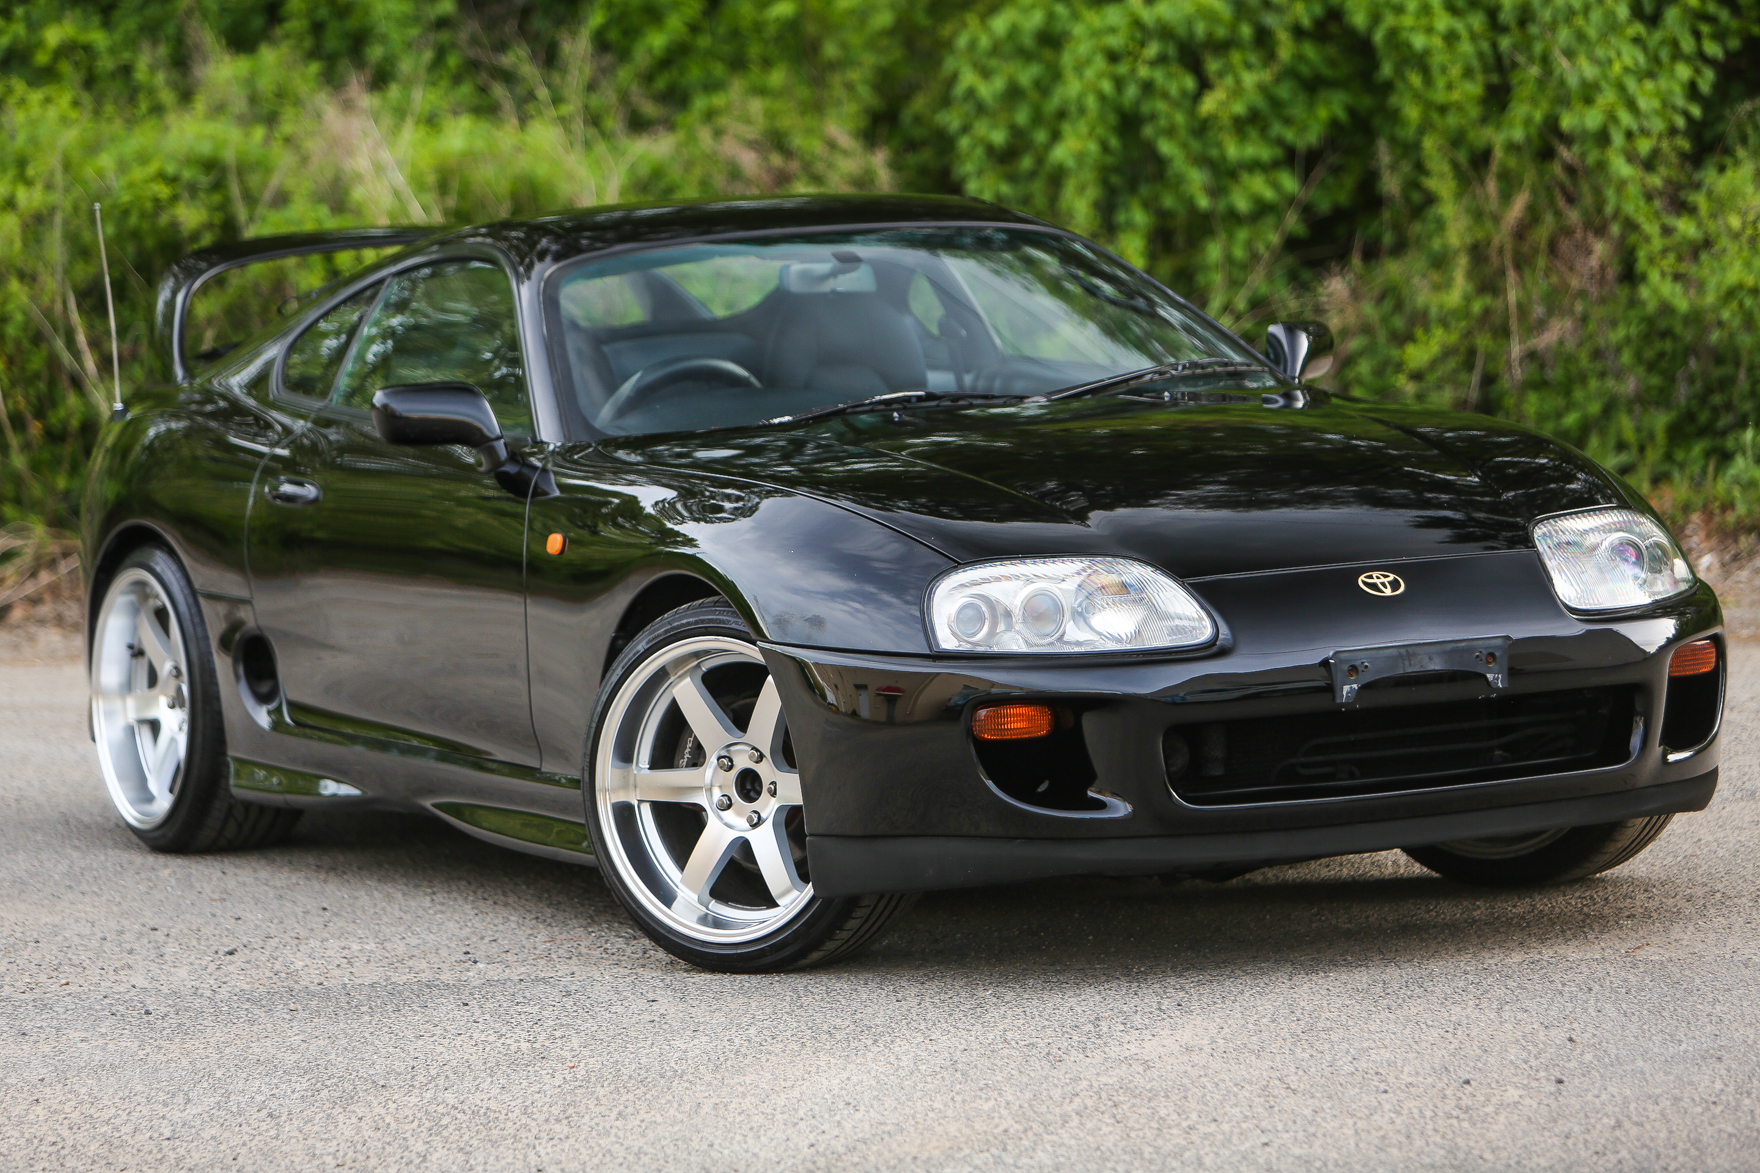 1995 Toyota Supra Black - $27,000